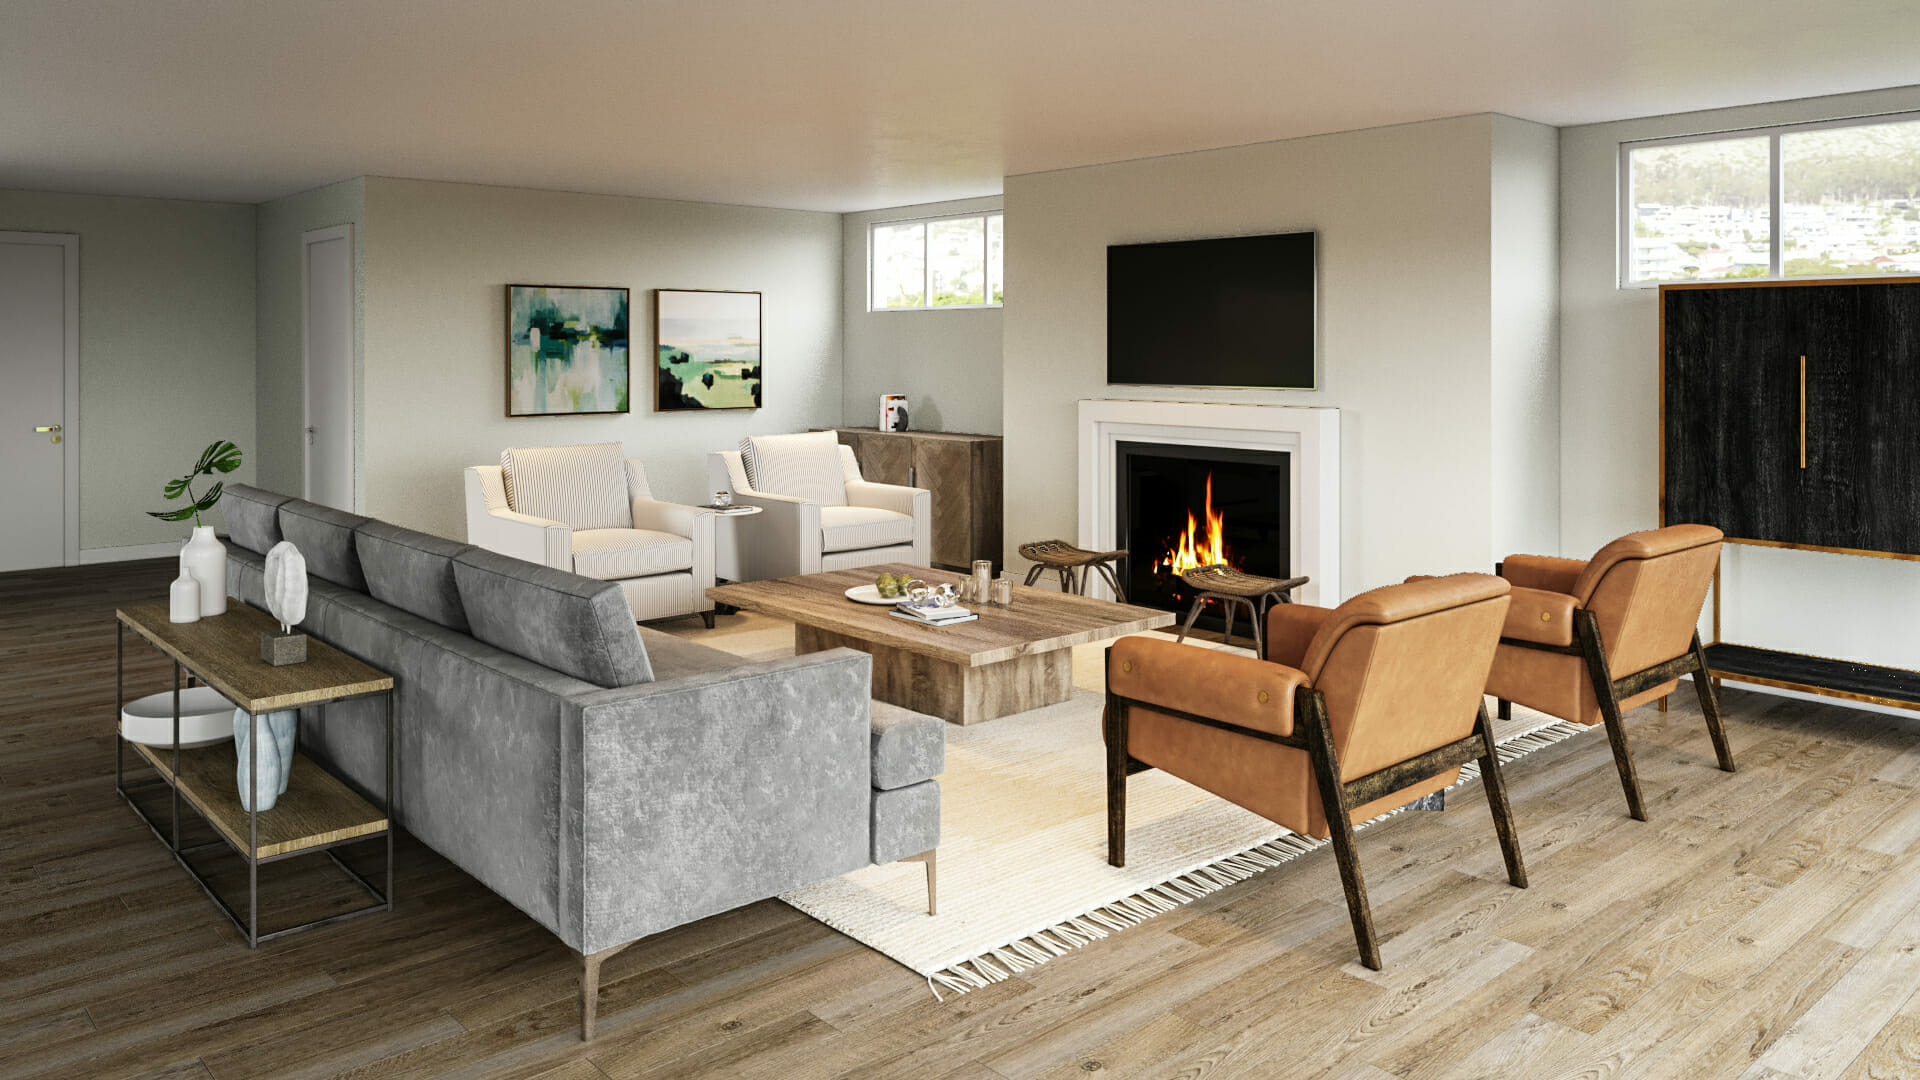 Cozy contemporary living room by Decorilla and Boston interior decorator, Ashley H.